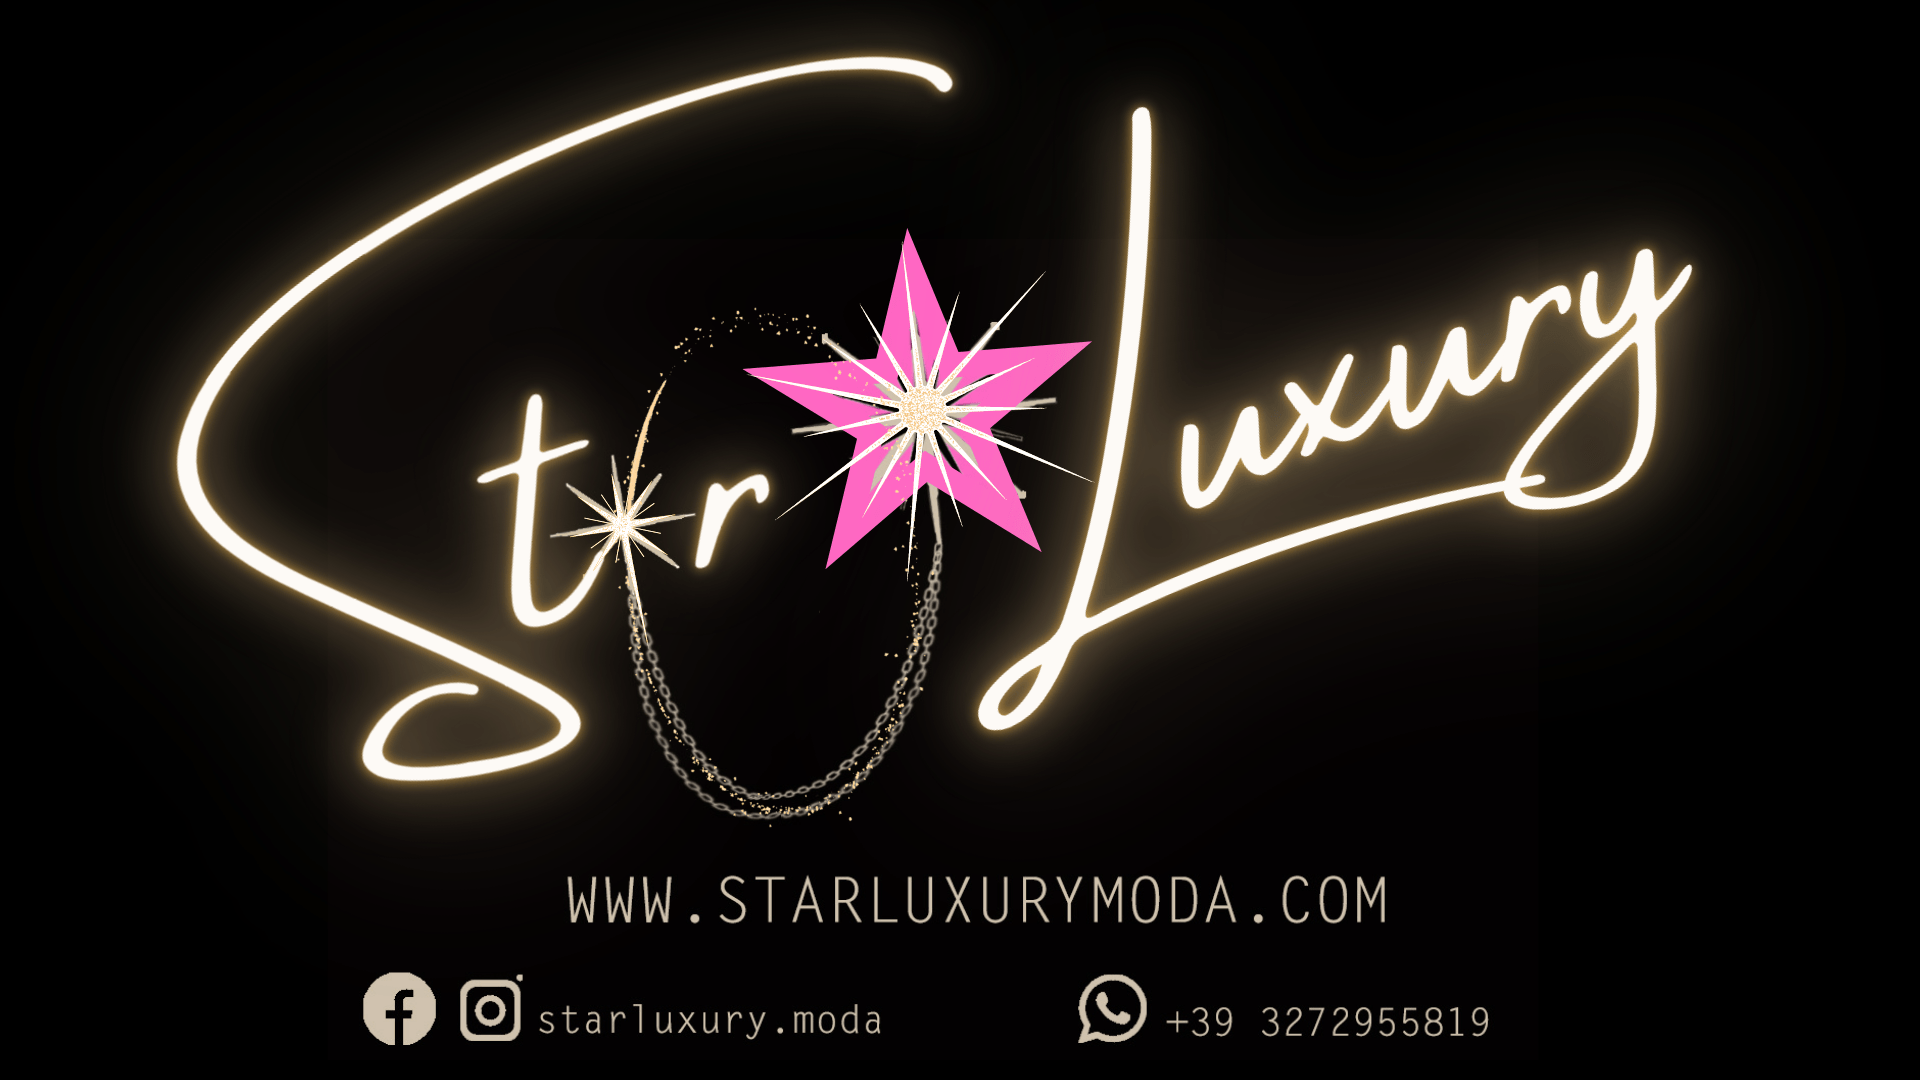 www.starluxurymoda.com